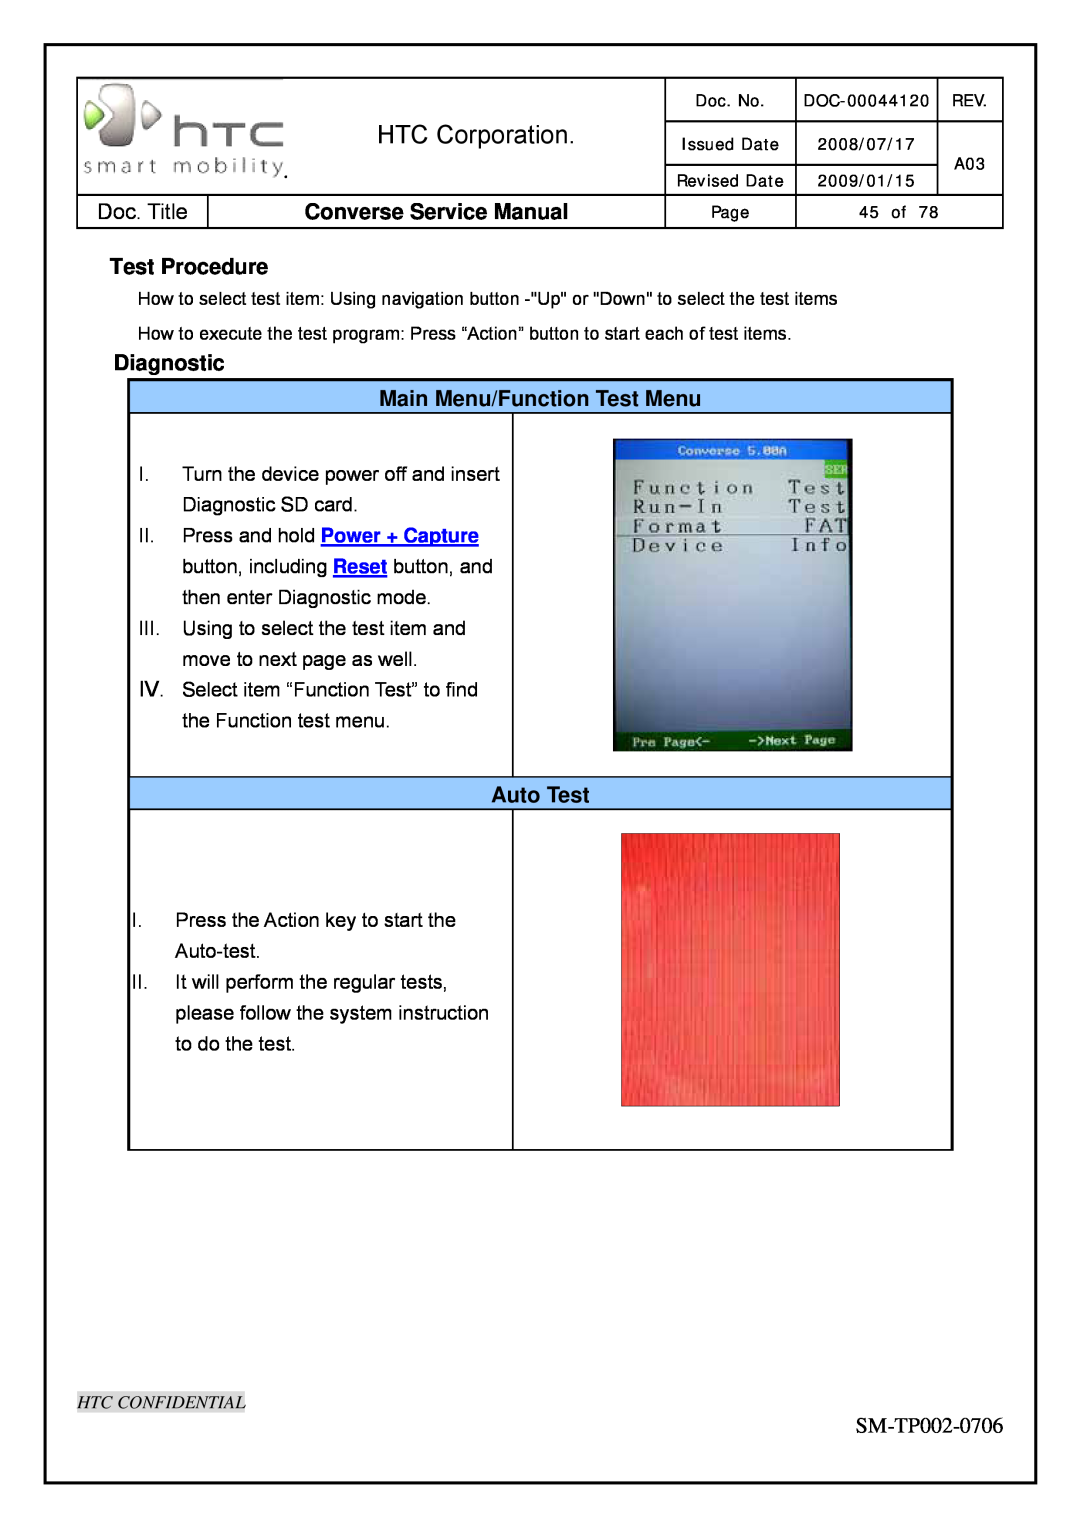 HTC SM-TP002-0706 service manual Test Procedure, Diagnostic Main Menu/Function Test Menu, Auto Test, HTC Corporation 